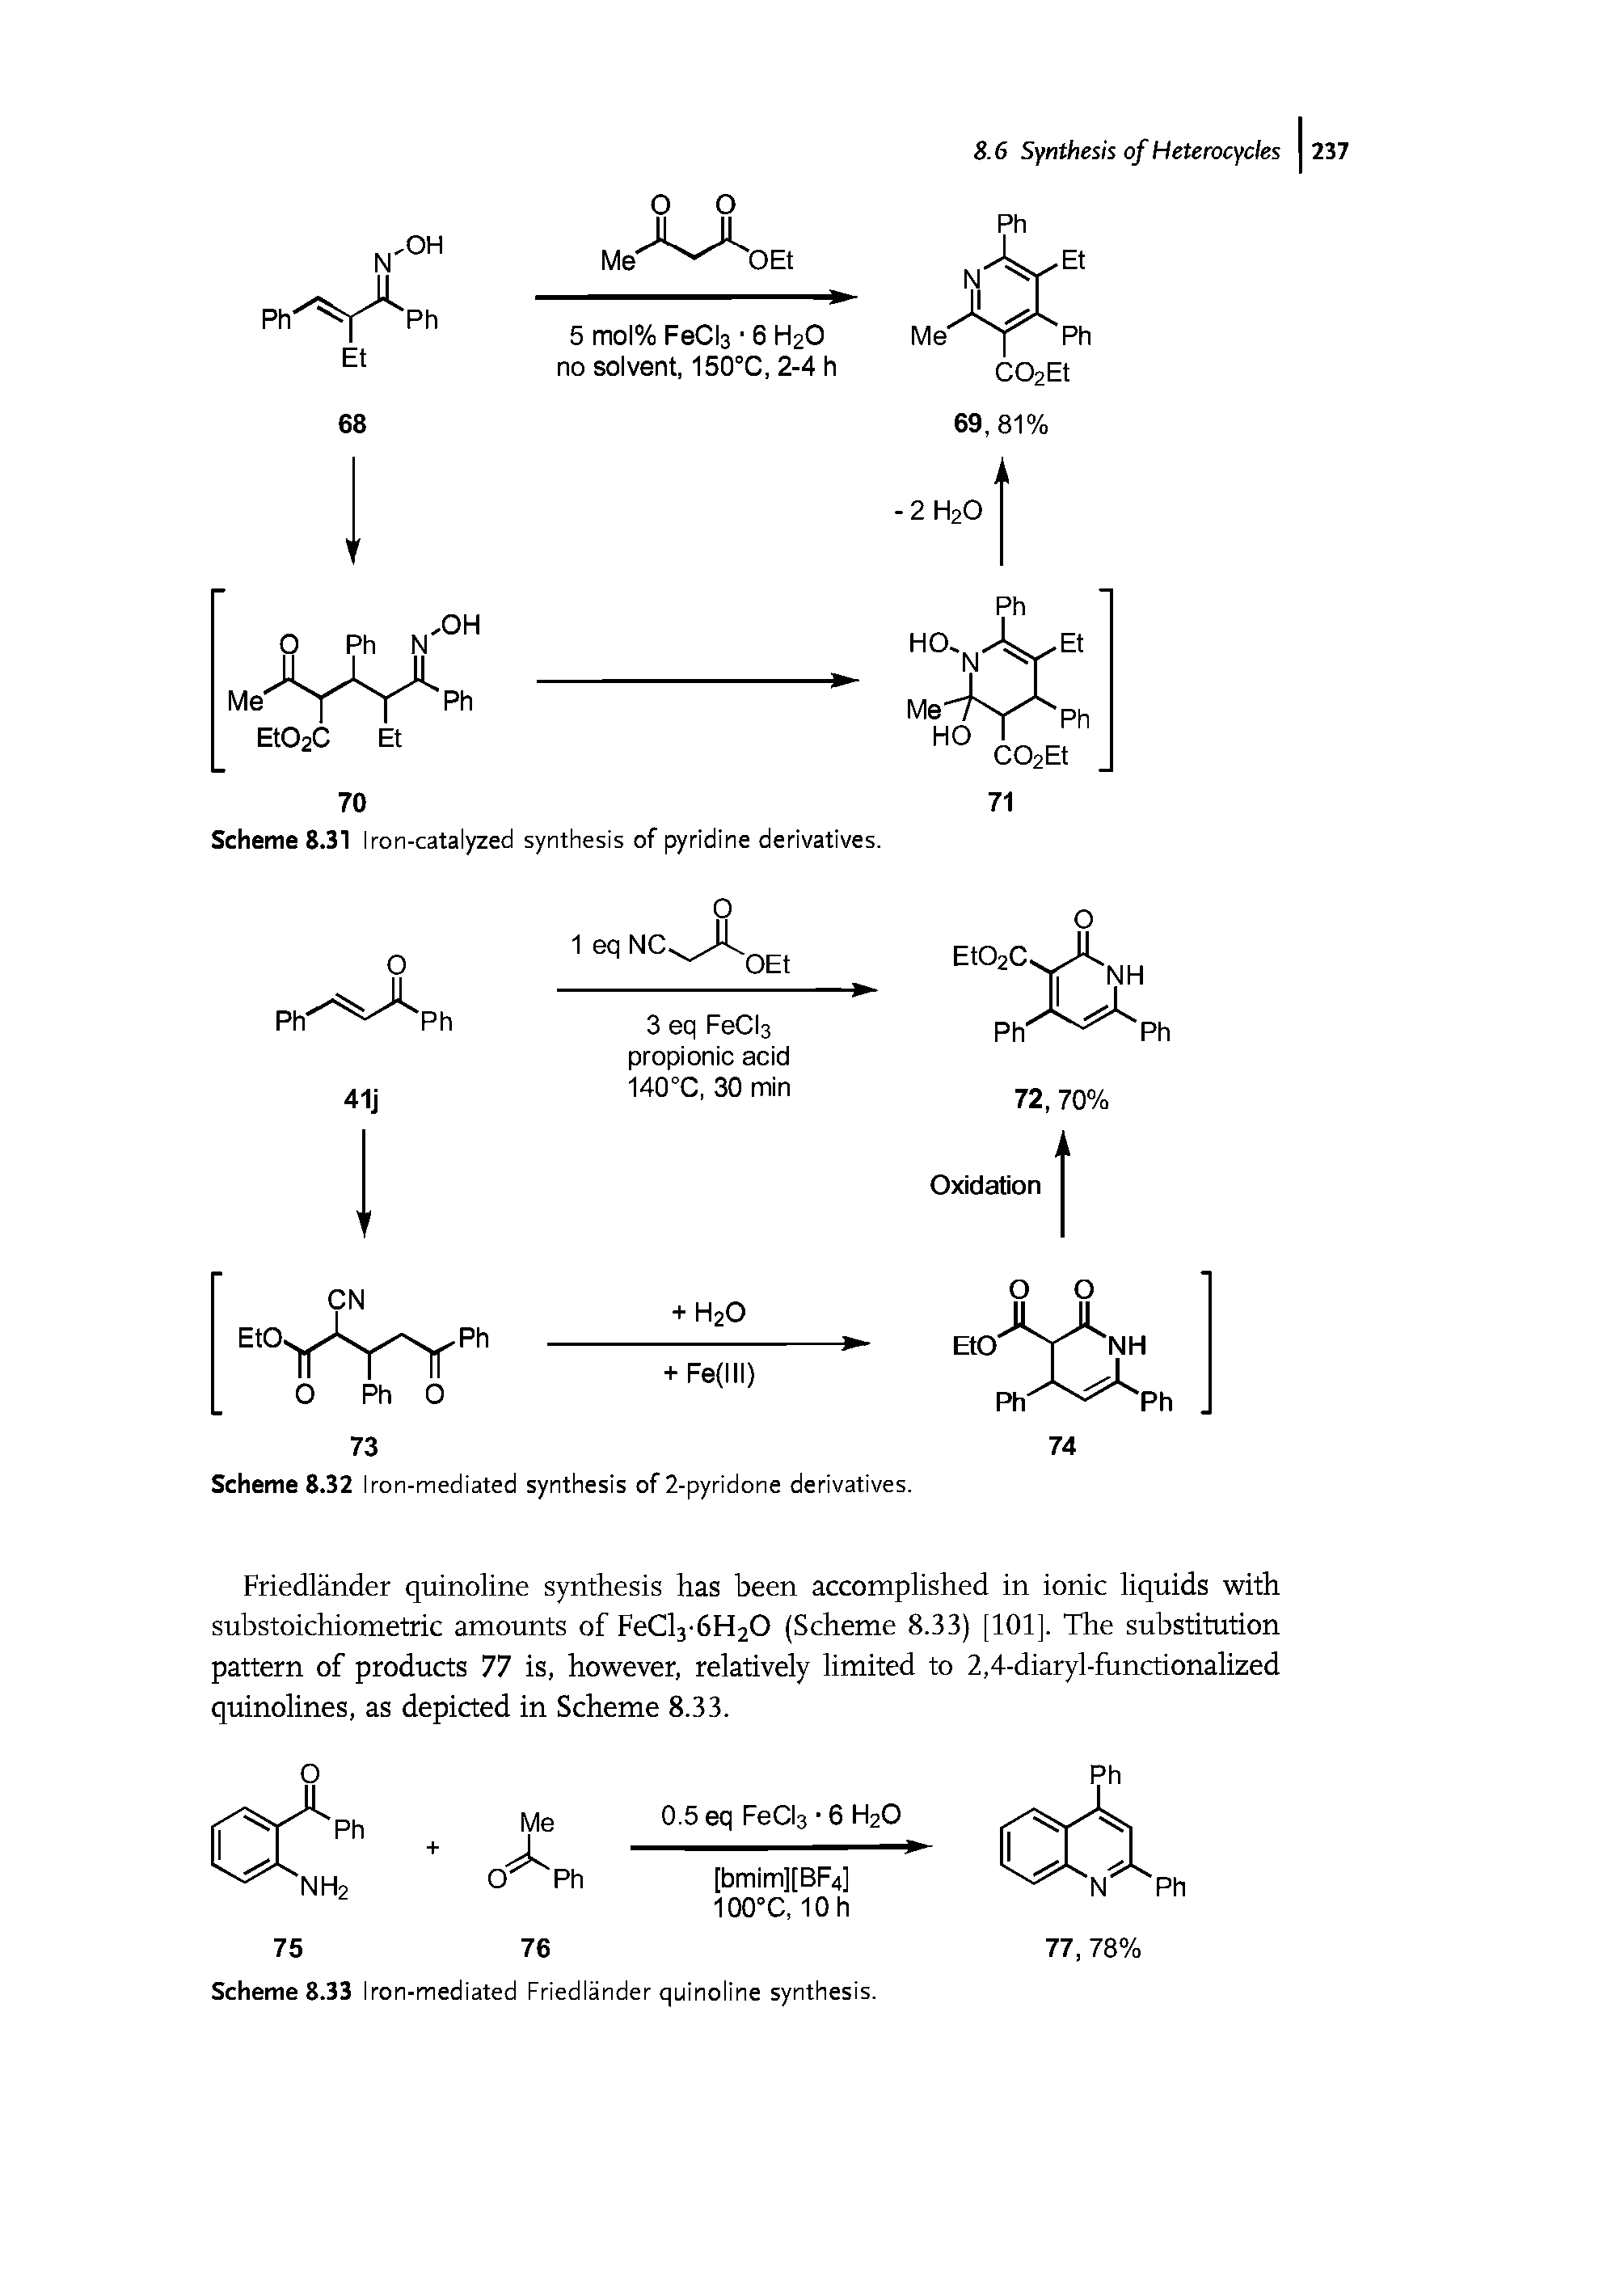 Scheme 8.33 Iron-mediated Friedlander quinoline synthesis.